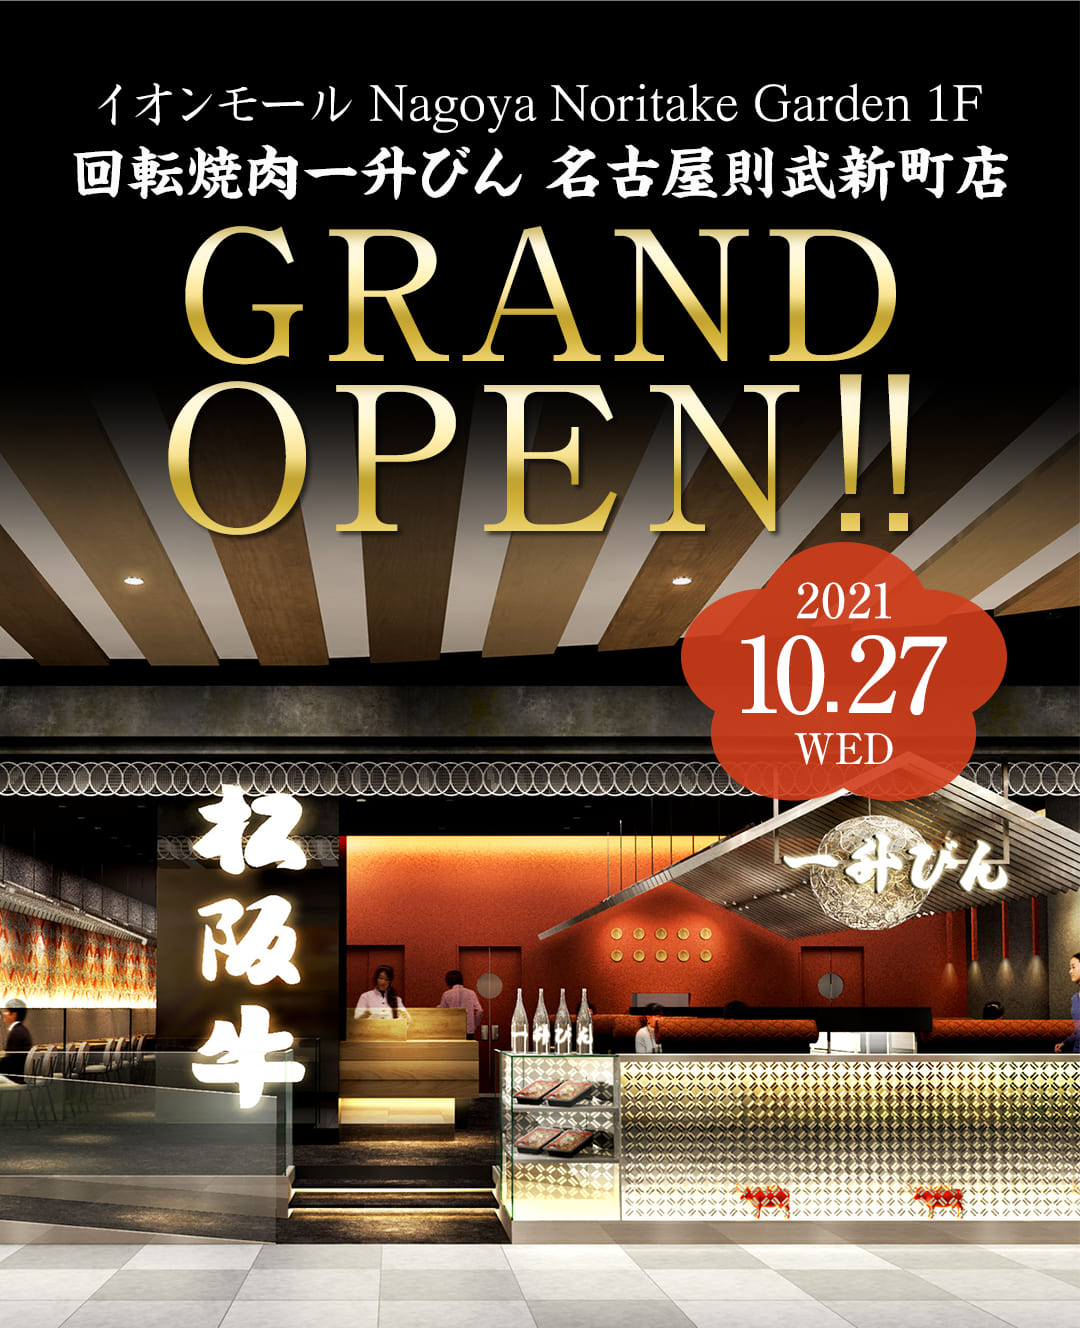 回転焼肉一升びん名古屋則武新町店 10月27日水曜日 グランドオープン